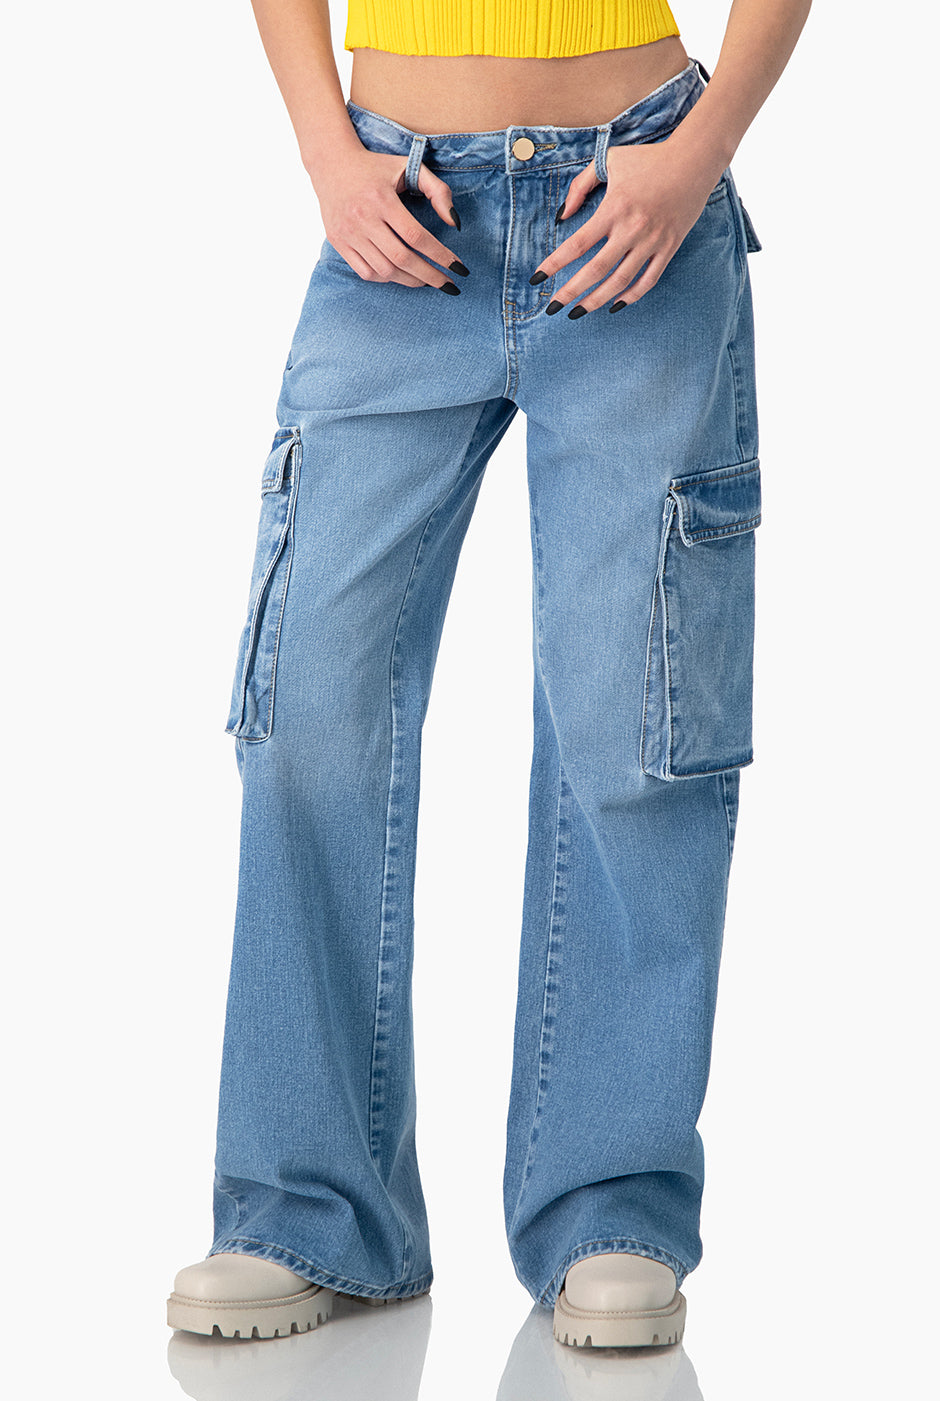 Jeans cargo con bolsillos de cartera